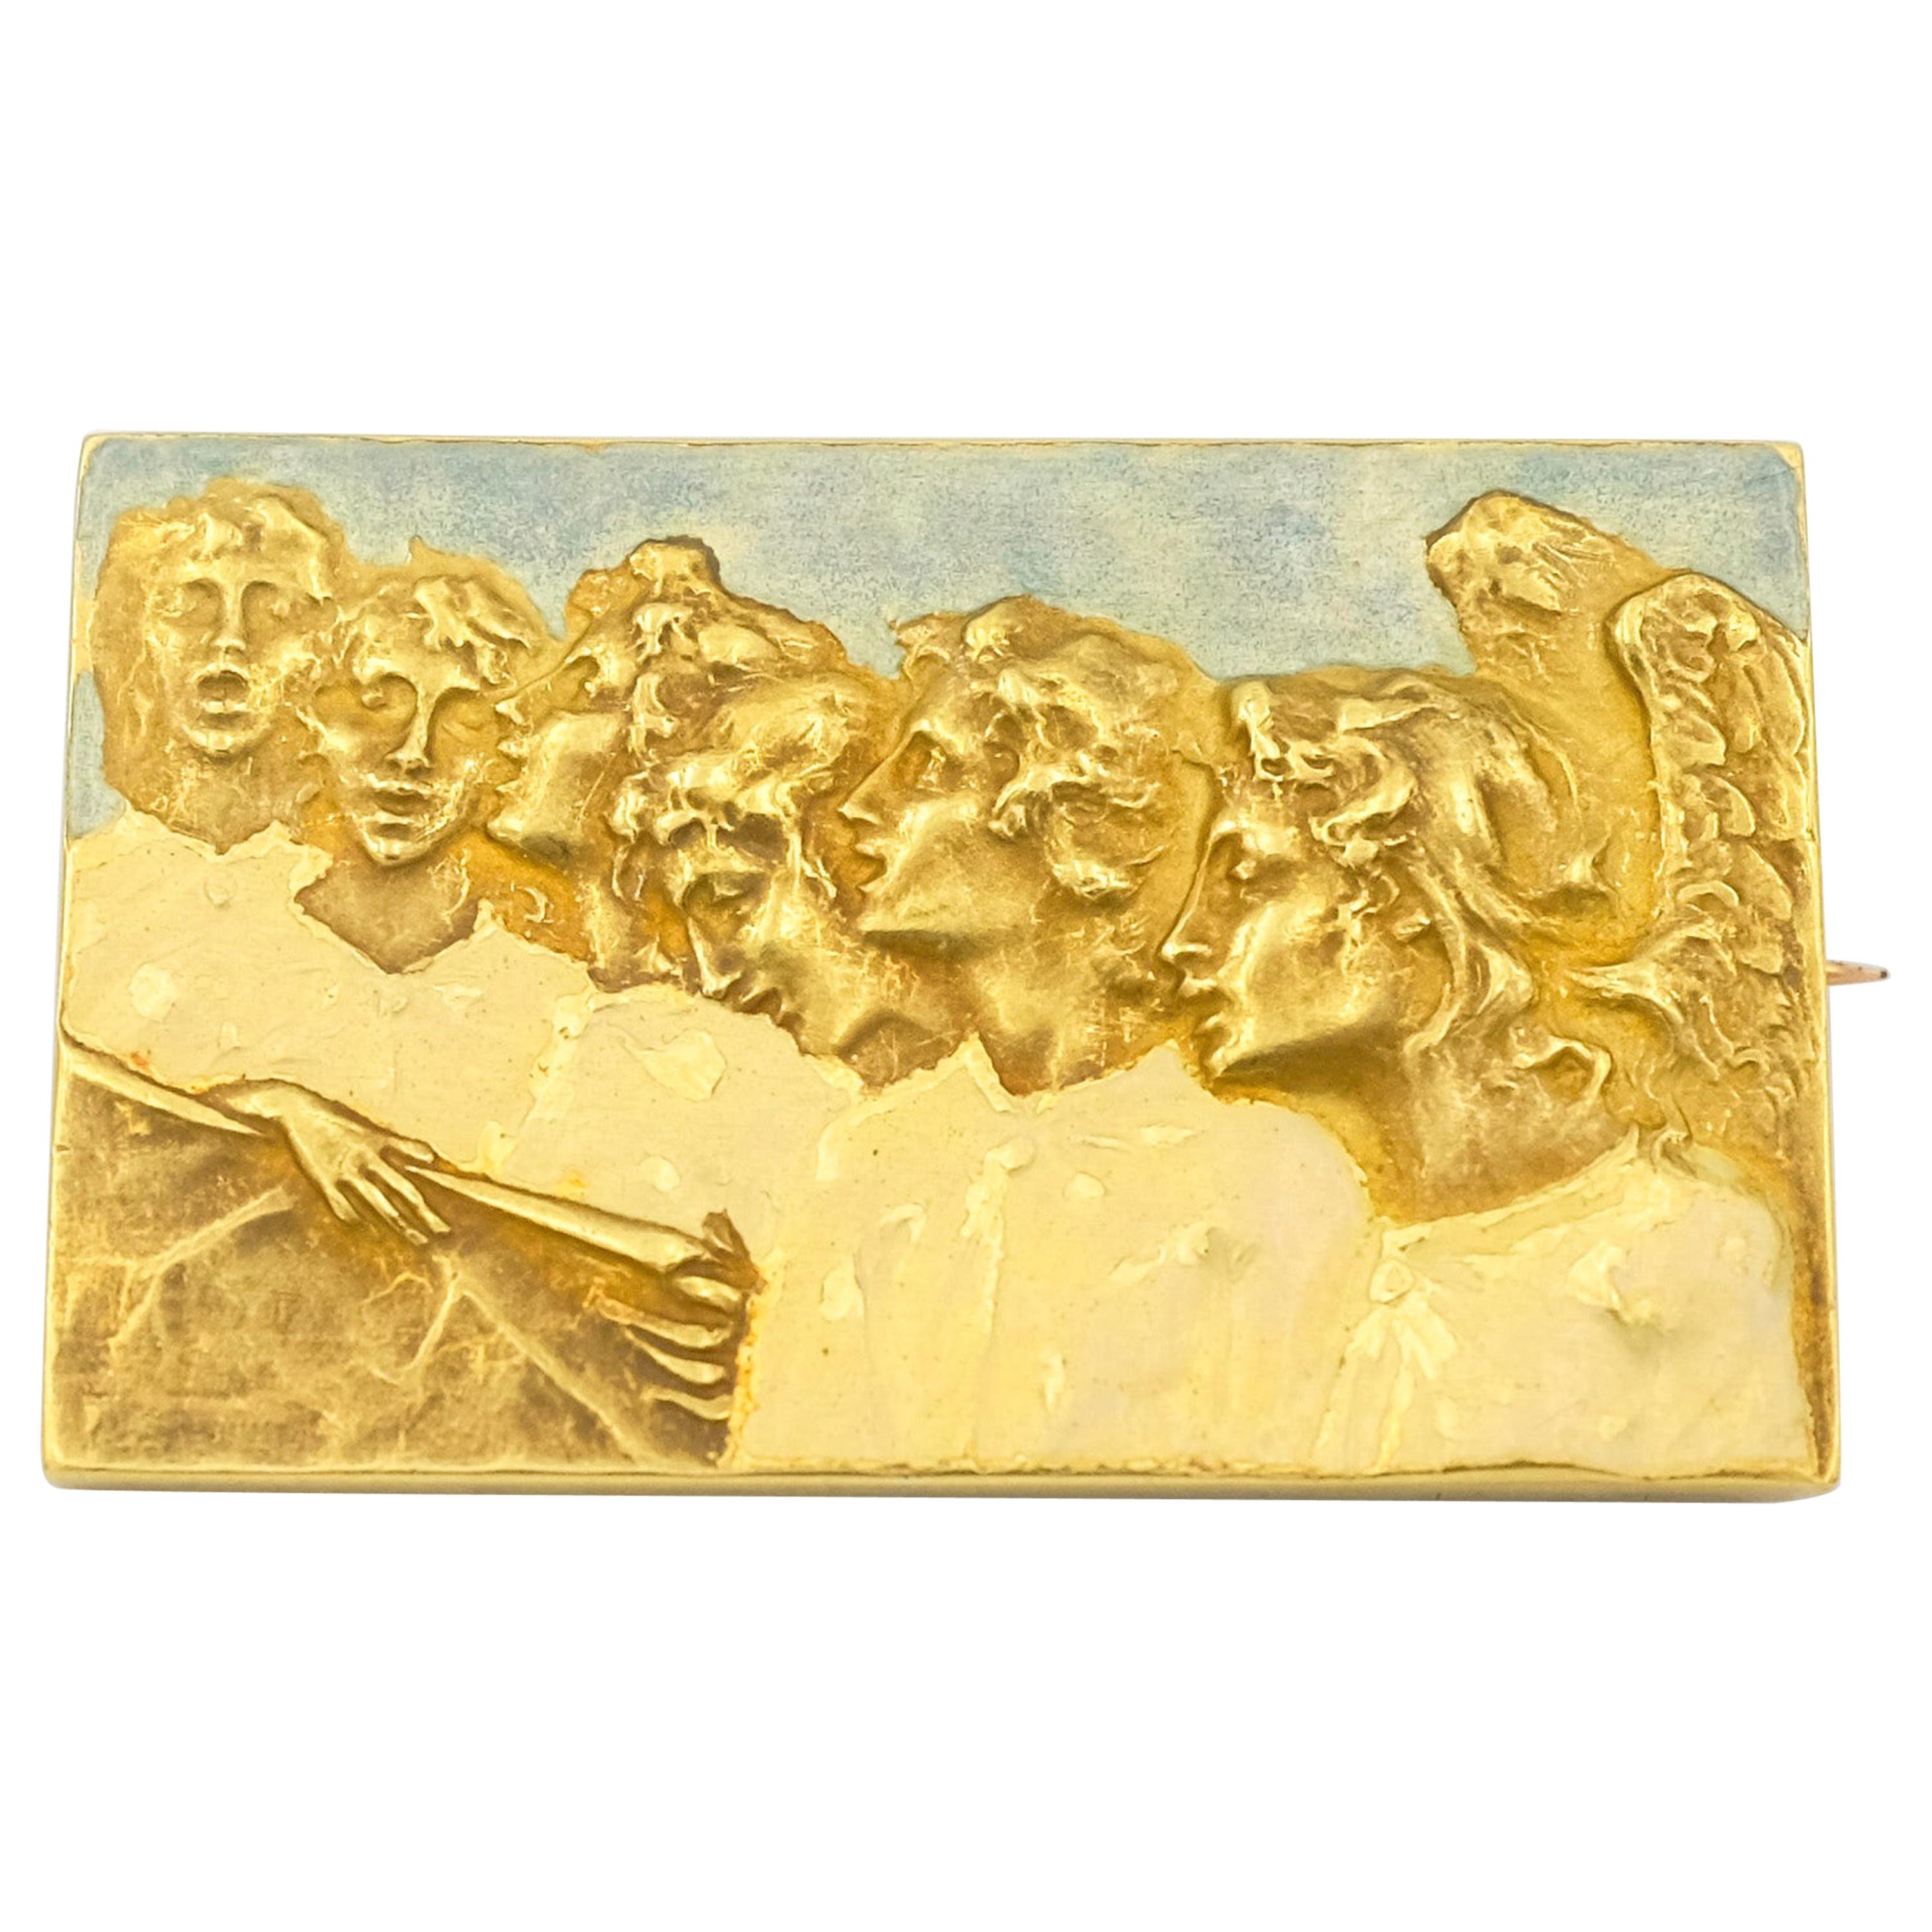 Signed Rene Lalique Singing Angels Enamel on Gold Brooch